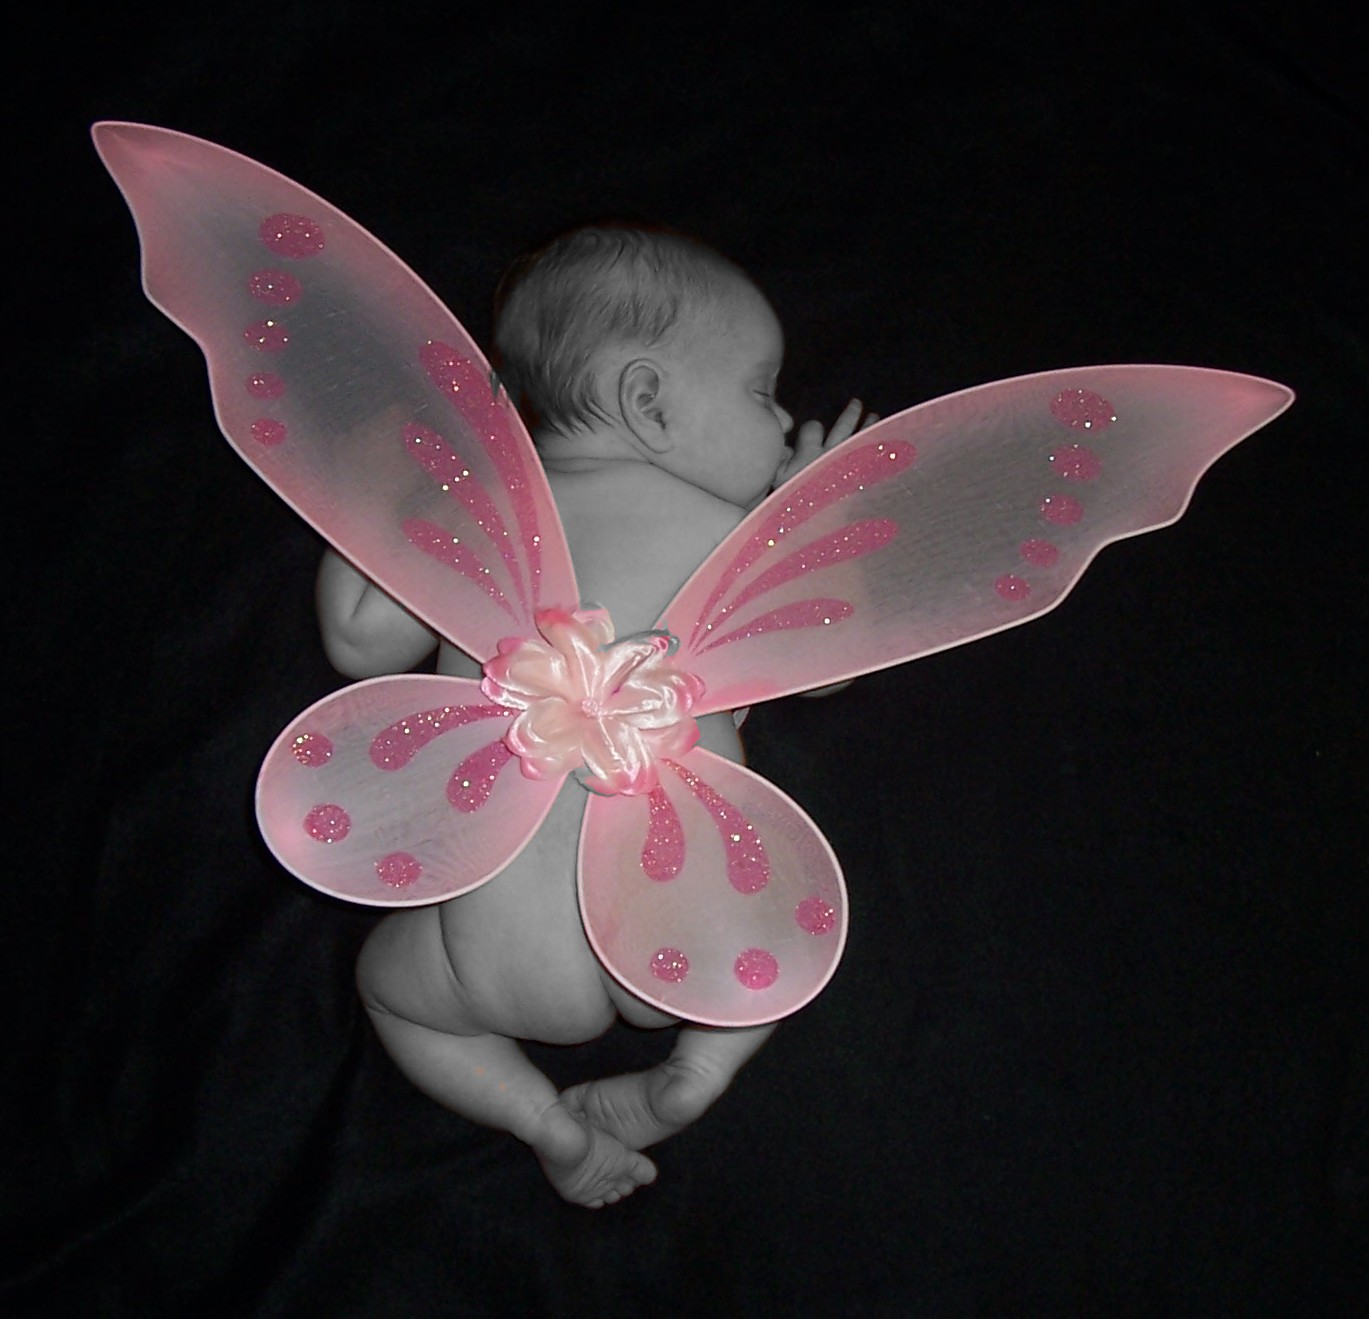 [wings+on+back+natural+pink+wings-B&W+baby.jpg]